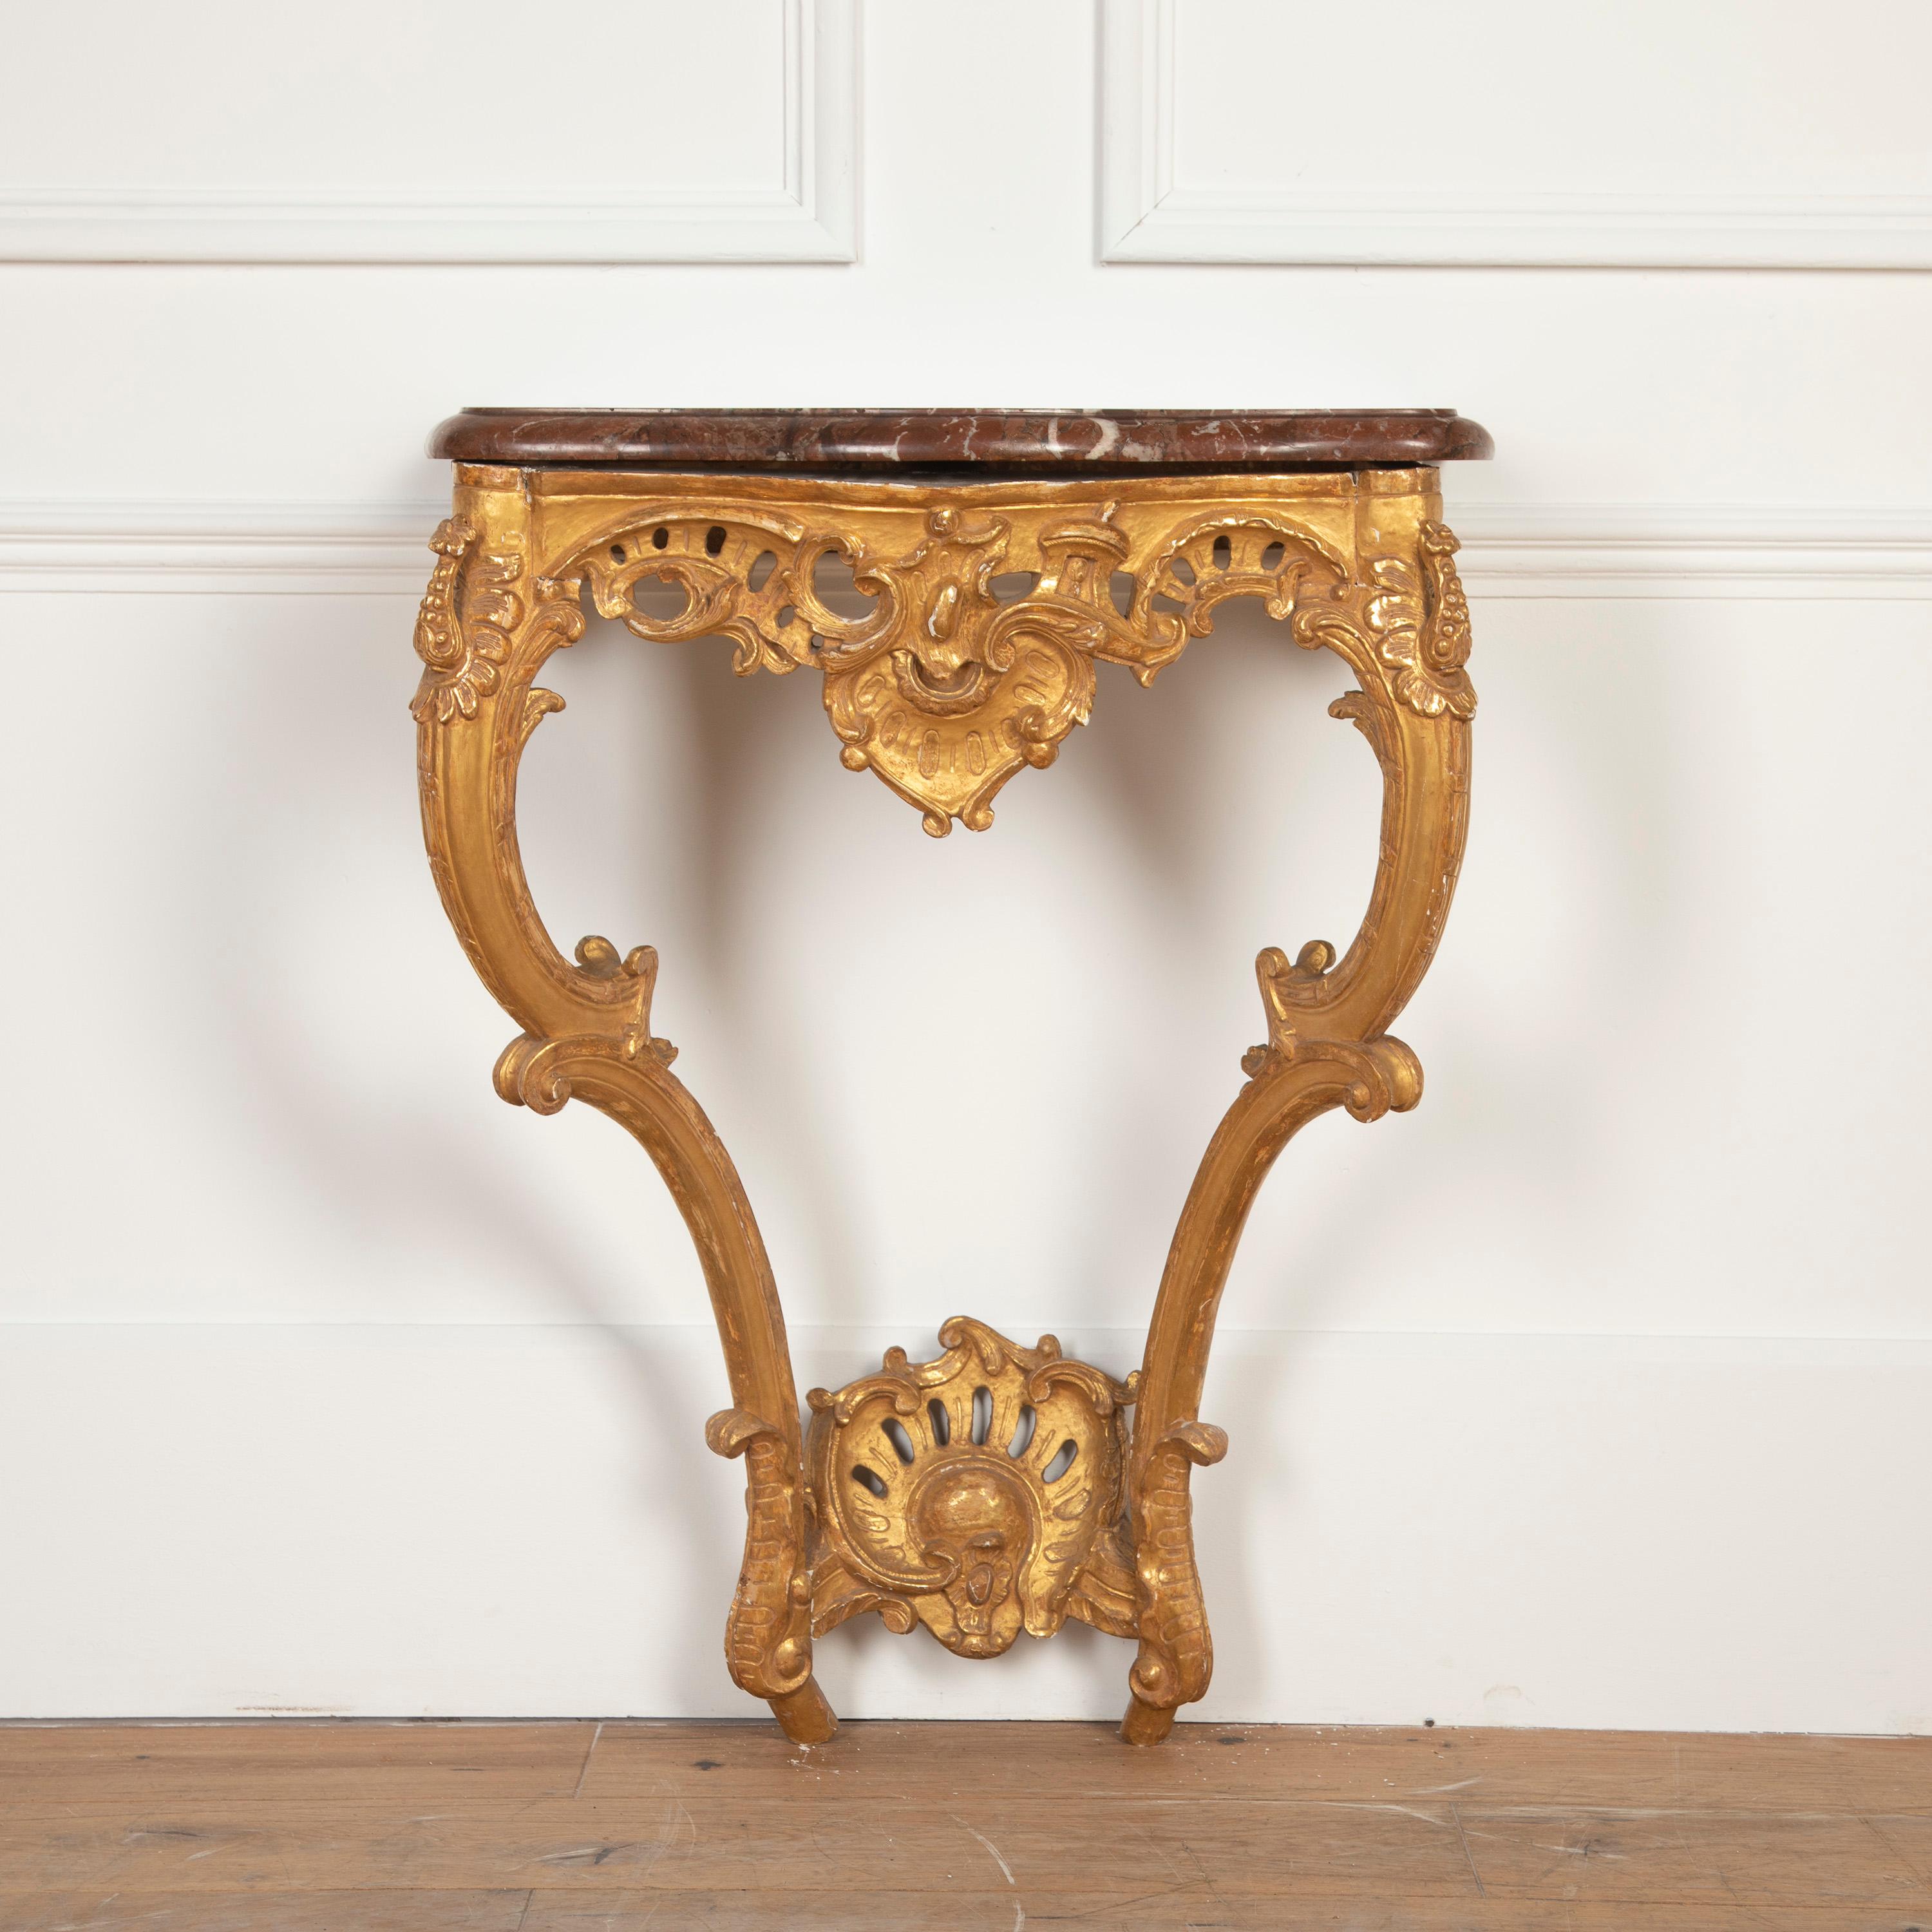 Superbe table console anglaise du début du 19ème siècle, dorée. 

Cette pièce charmante a des proportions élégantes et présente des détails sculptés à la main sur toute la structure en bois. Au-dessus de la structure en bois se trouve une grande